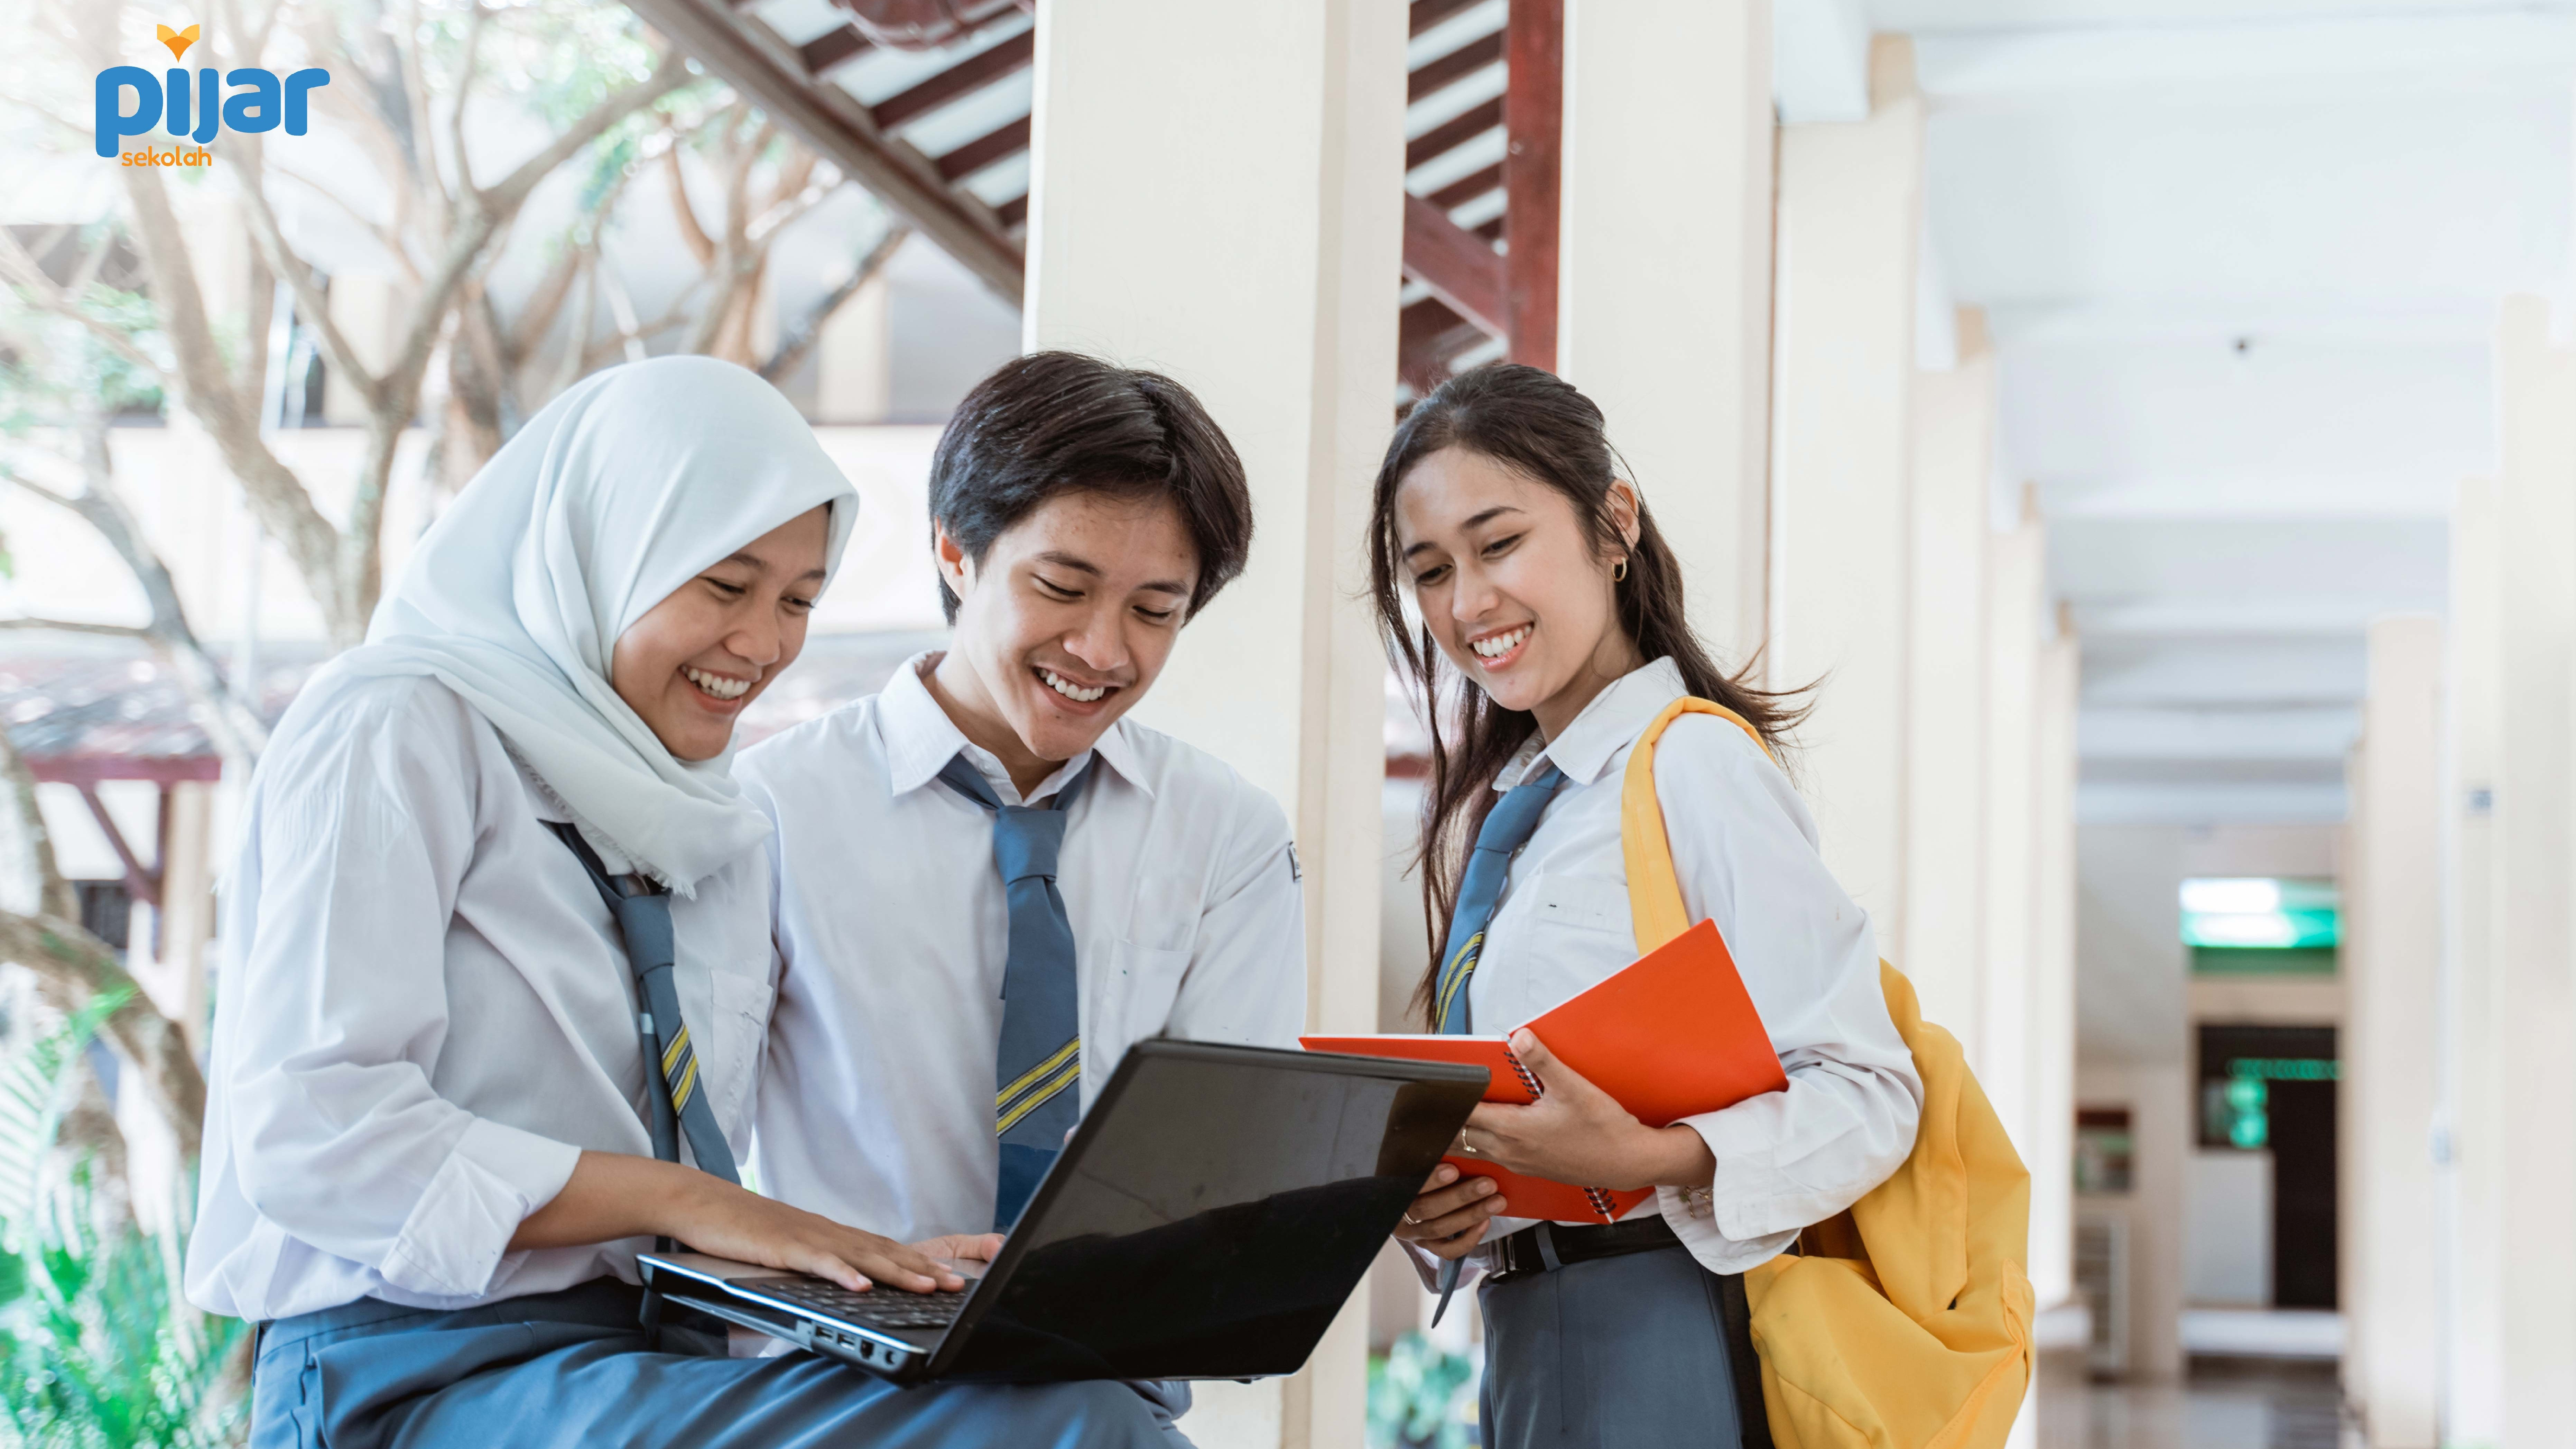 Dalam rangka mendukung digitalisasi di sekolah, PT Telkom Indonesia (Persero) Tbk (Telkom) menghadirkan platform digital yang membantu proses belajar mengajar lewat Pijar Sekolah.